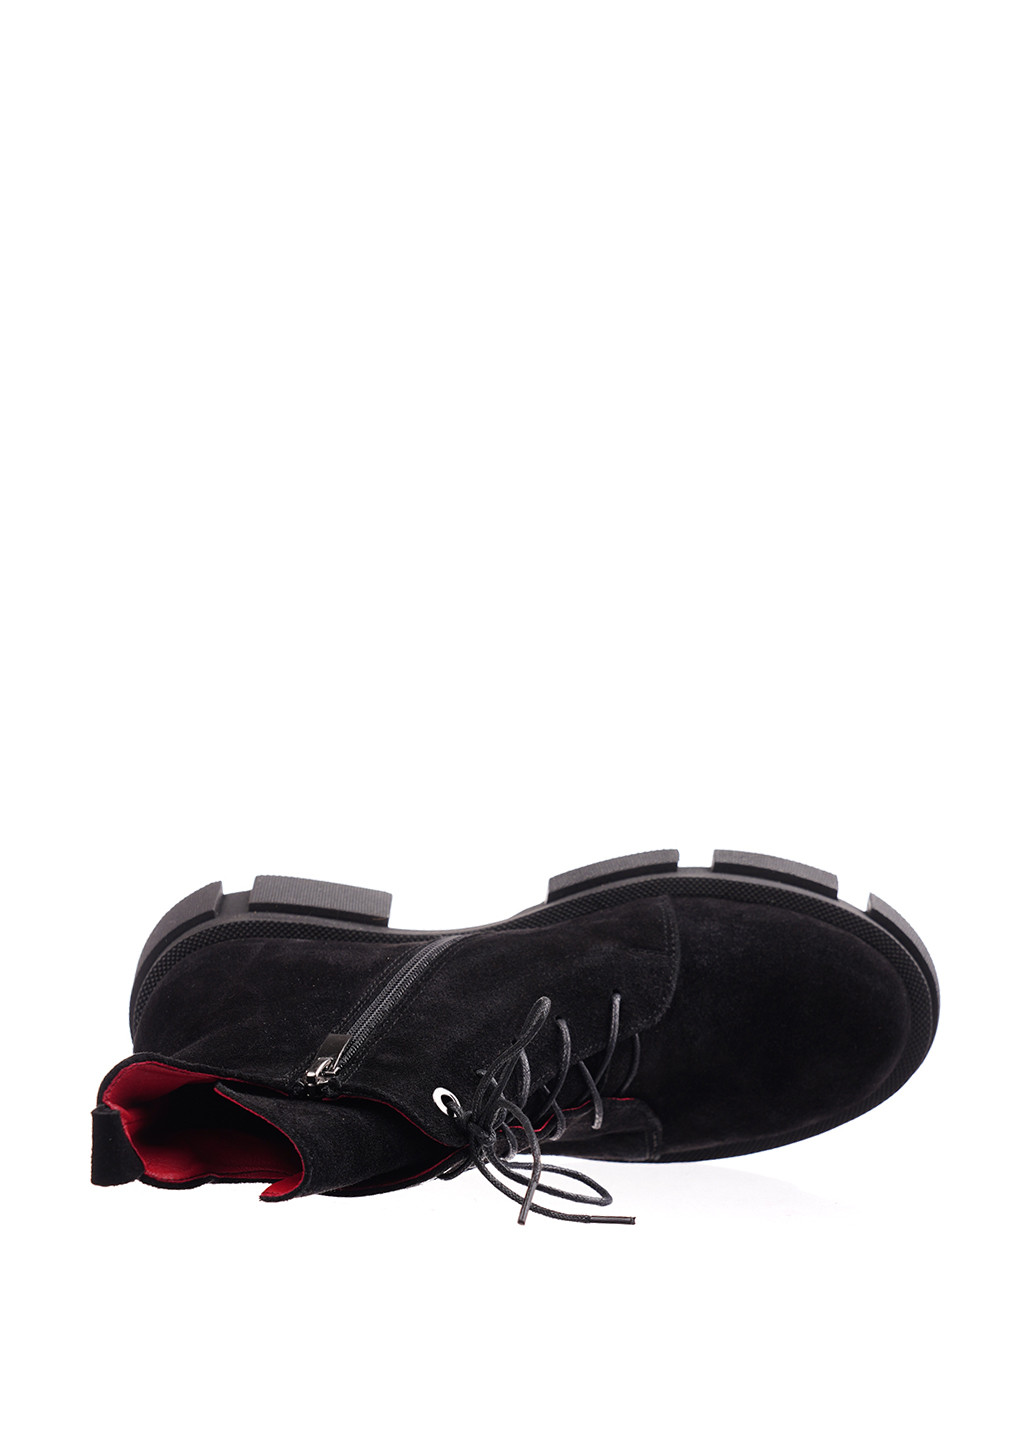 Осенние ботинки Lon&Ys со шнуровкой из натуральной замши